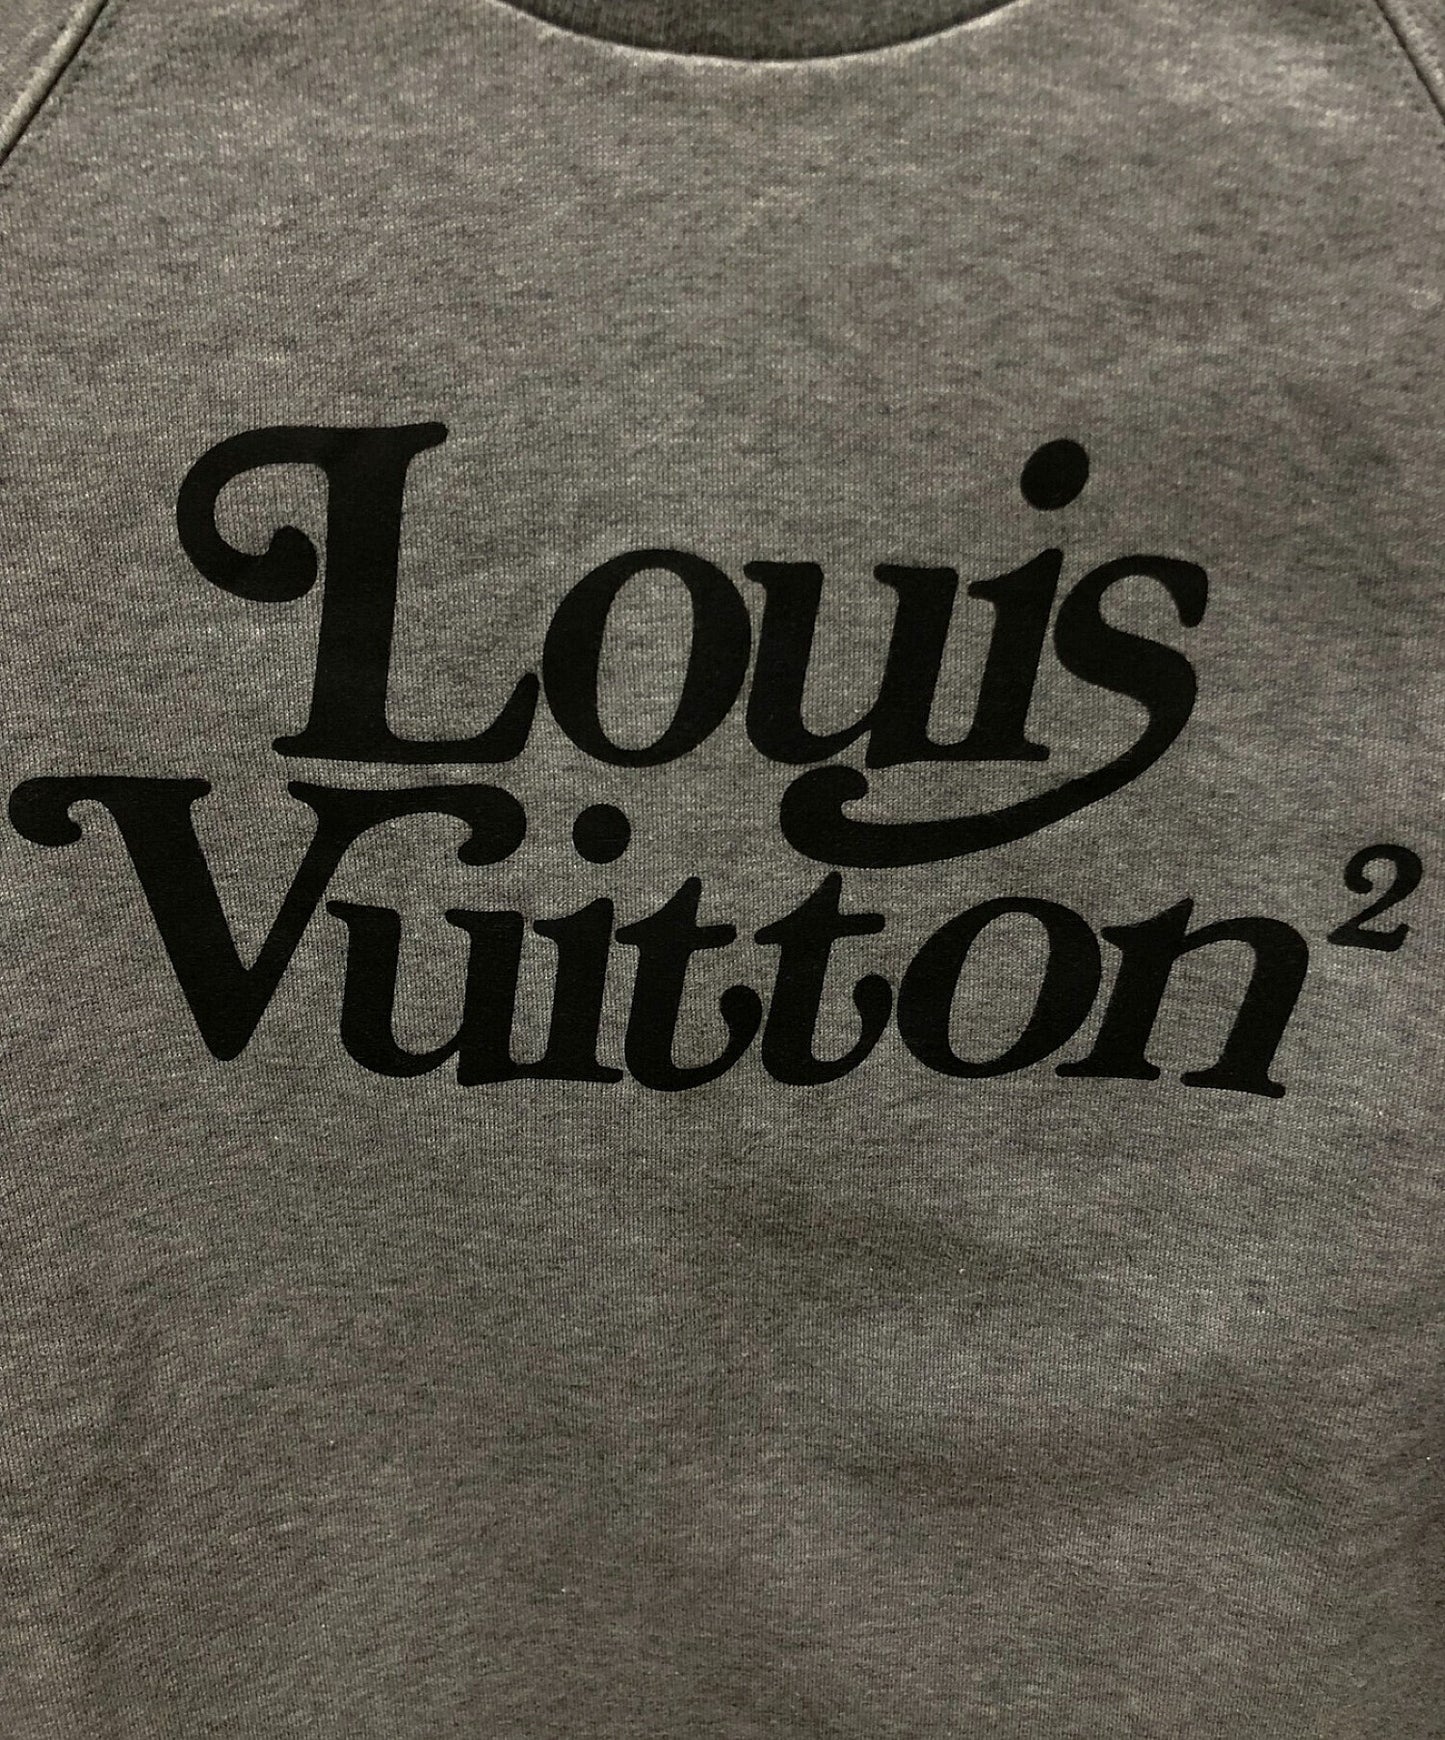 Louis Vuitton Nigo Sweatshirt